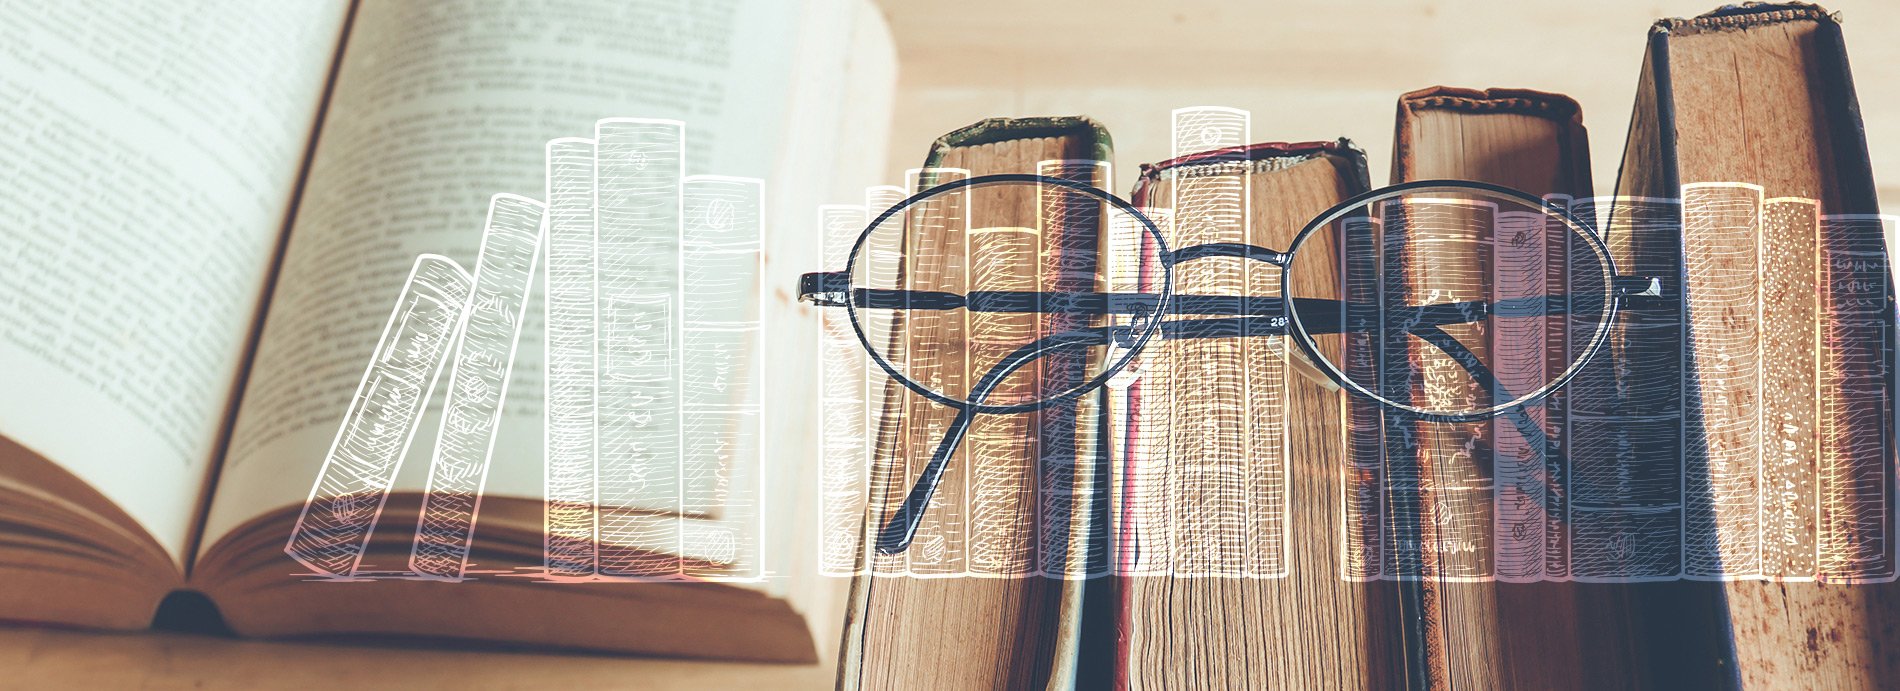 Gözlük ve kitaplar görseli.